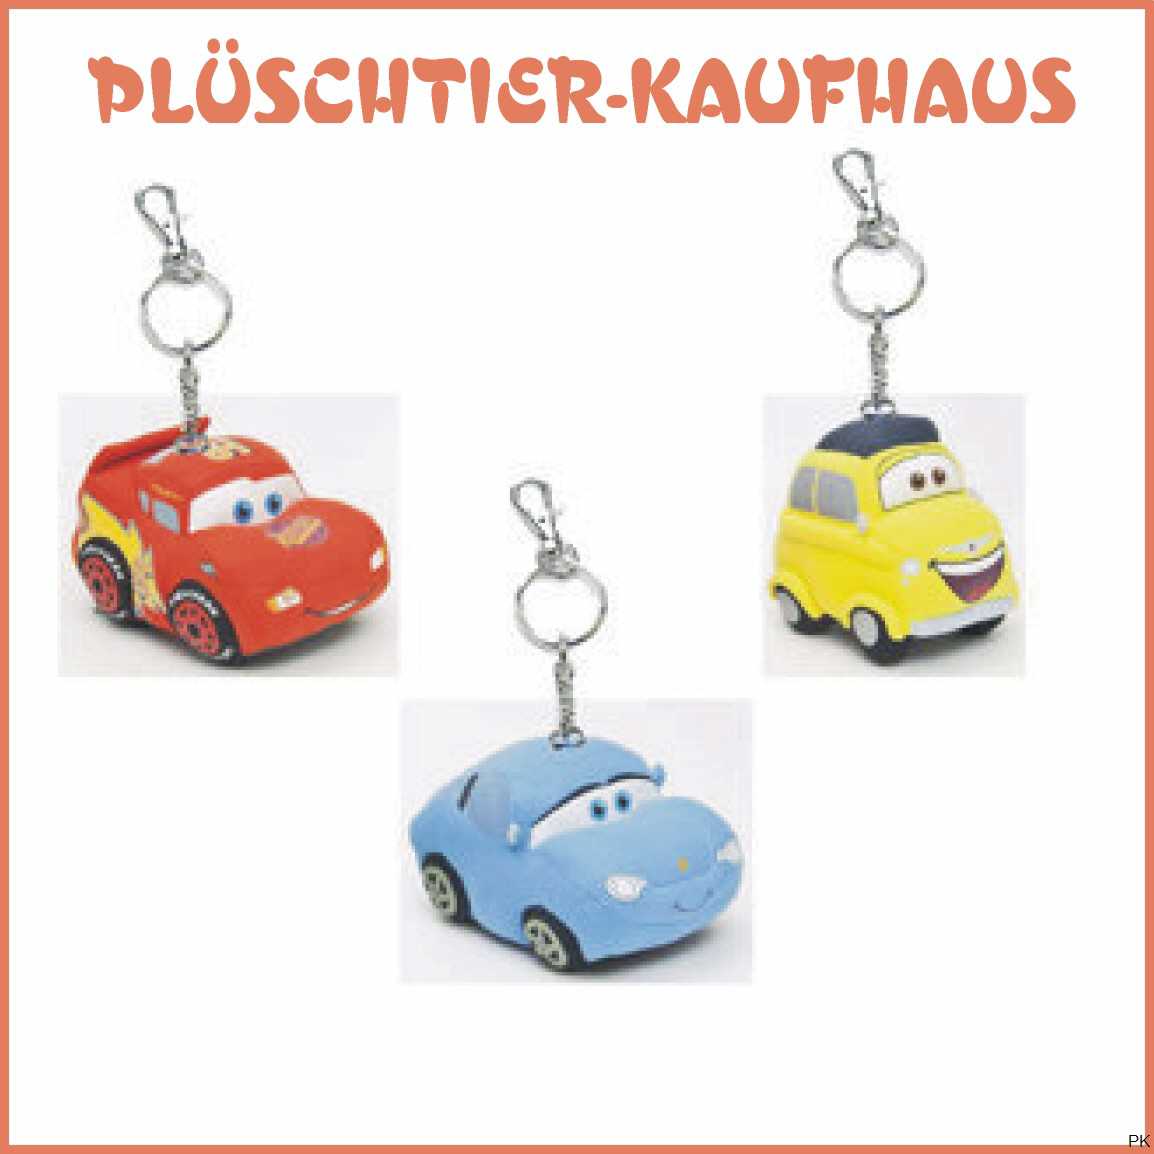 https://www.plueschtier-kaufhaus.de/mobile/plueschtier/images/900469900470900471thecarsausplueschschluessela.jpg